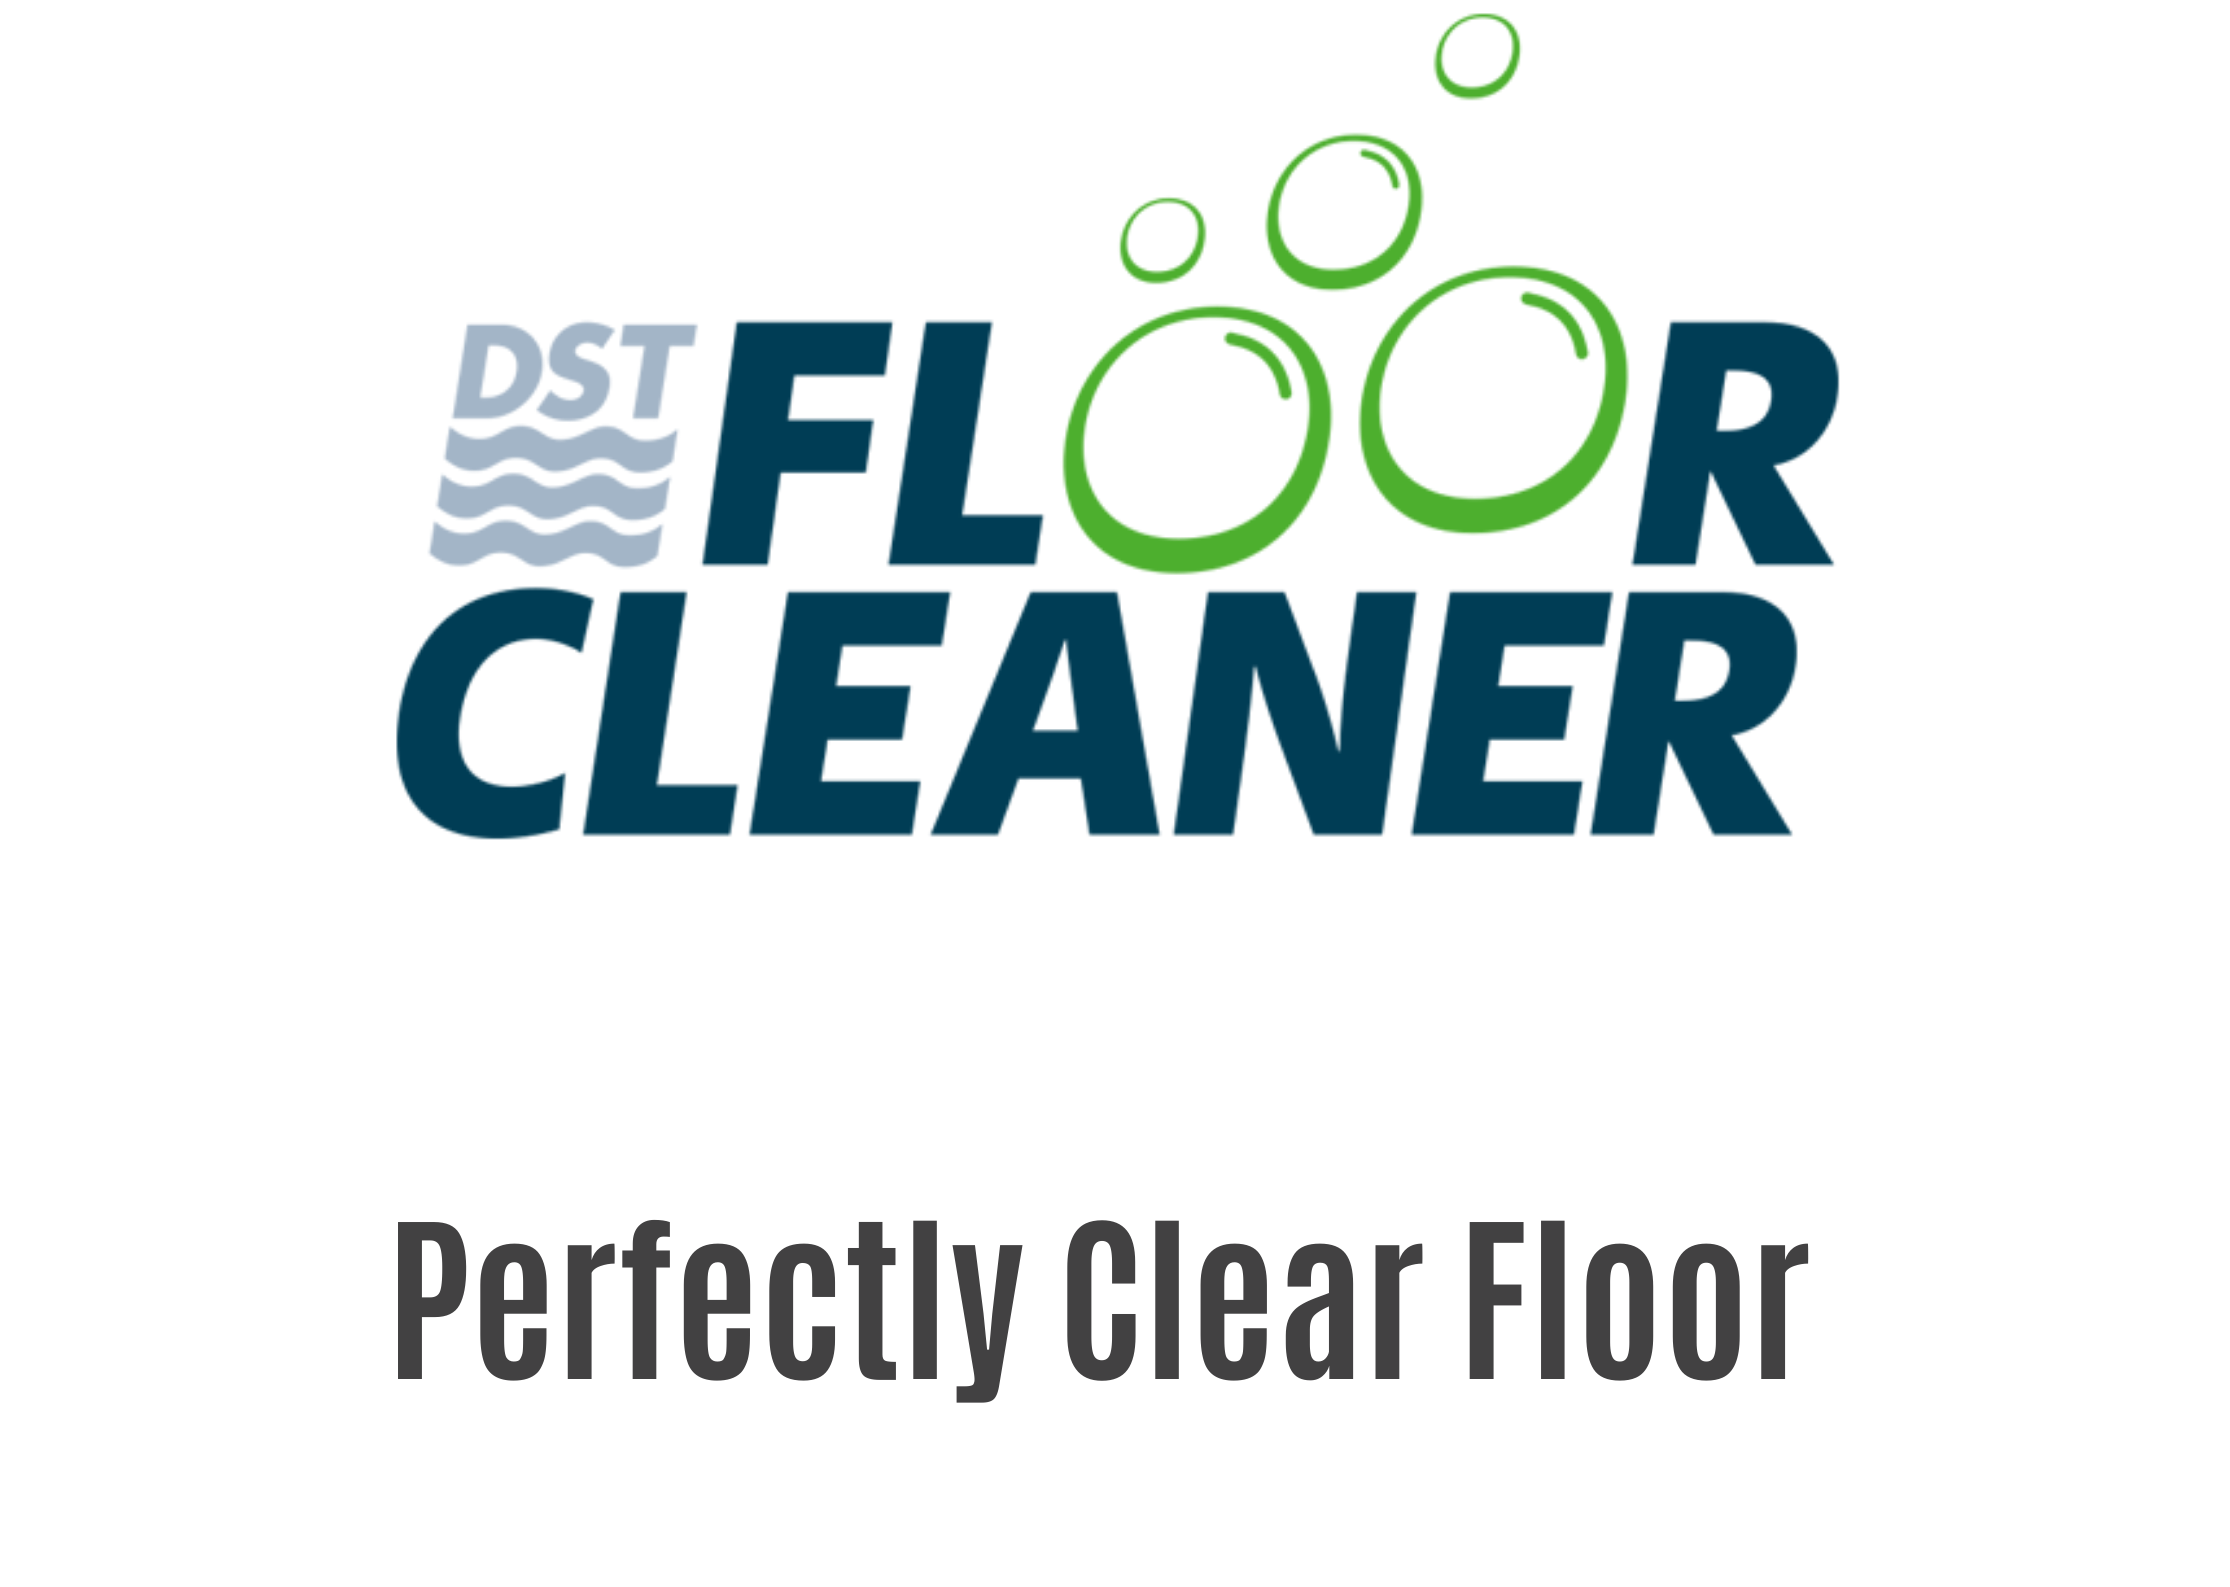 DST-FLOOR CLEANER